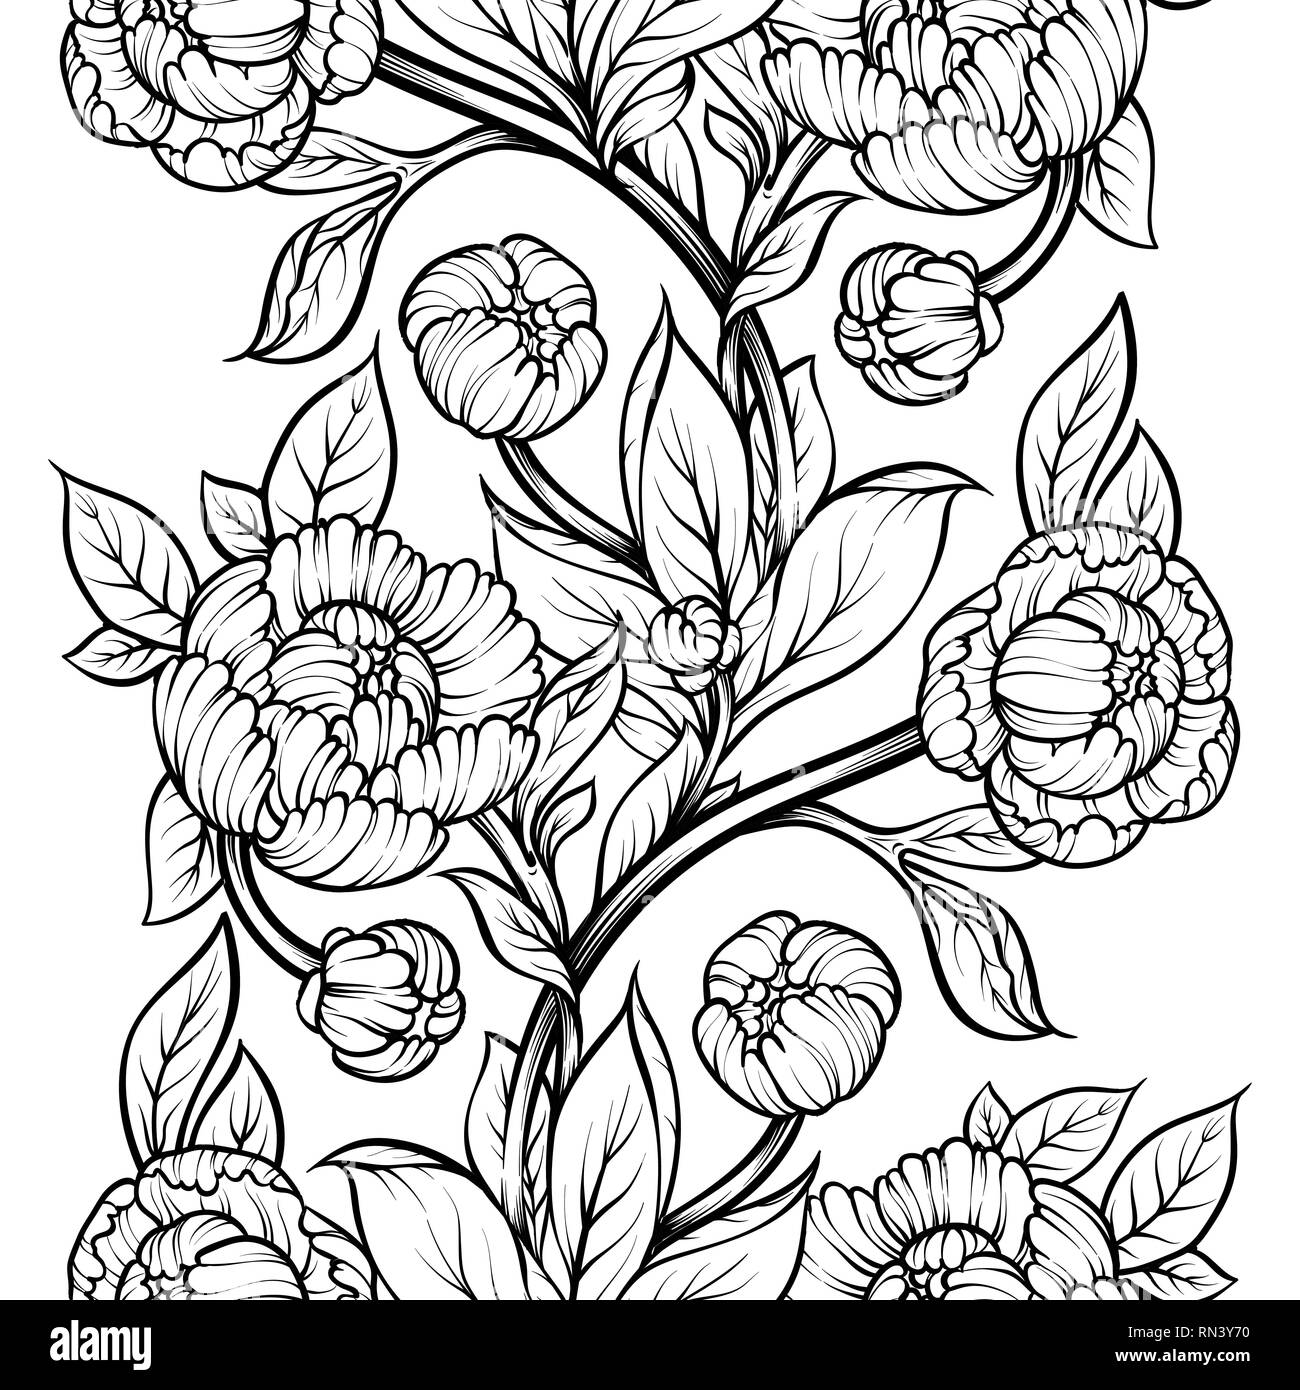 Floral Sketch Images  Free Download on Freepik